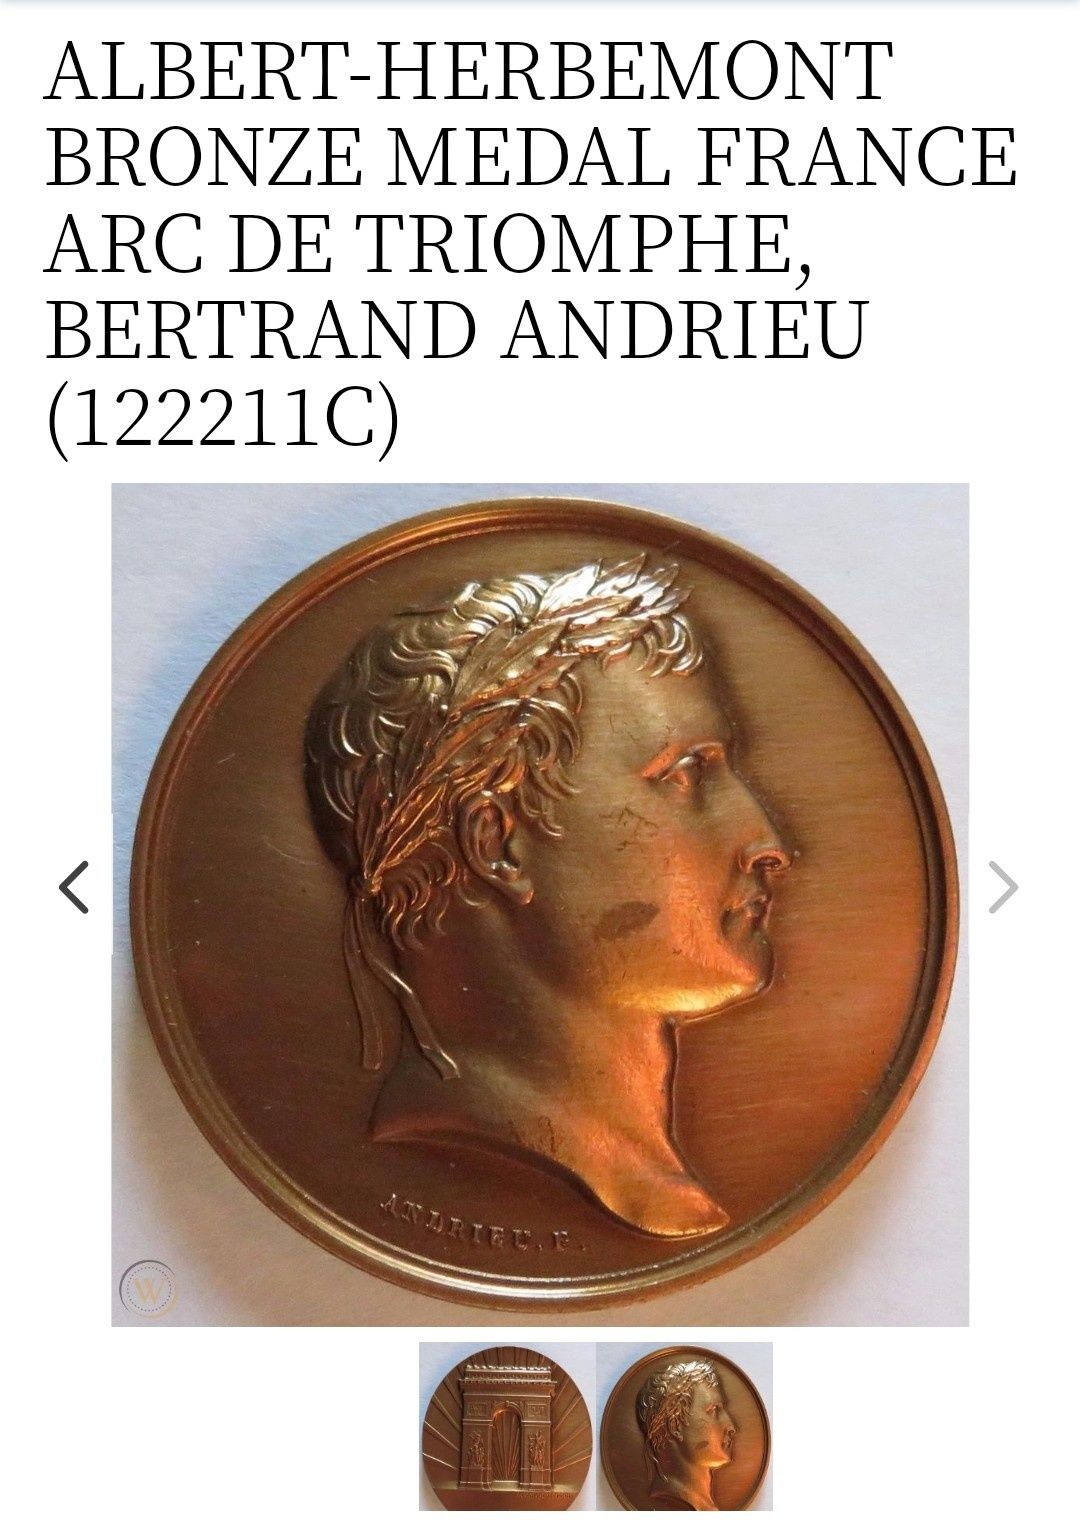 Medalha bronze Arco do triunfo.